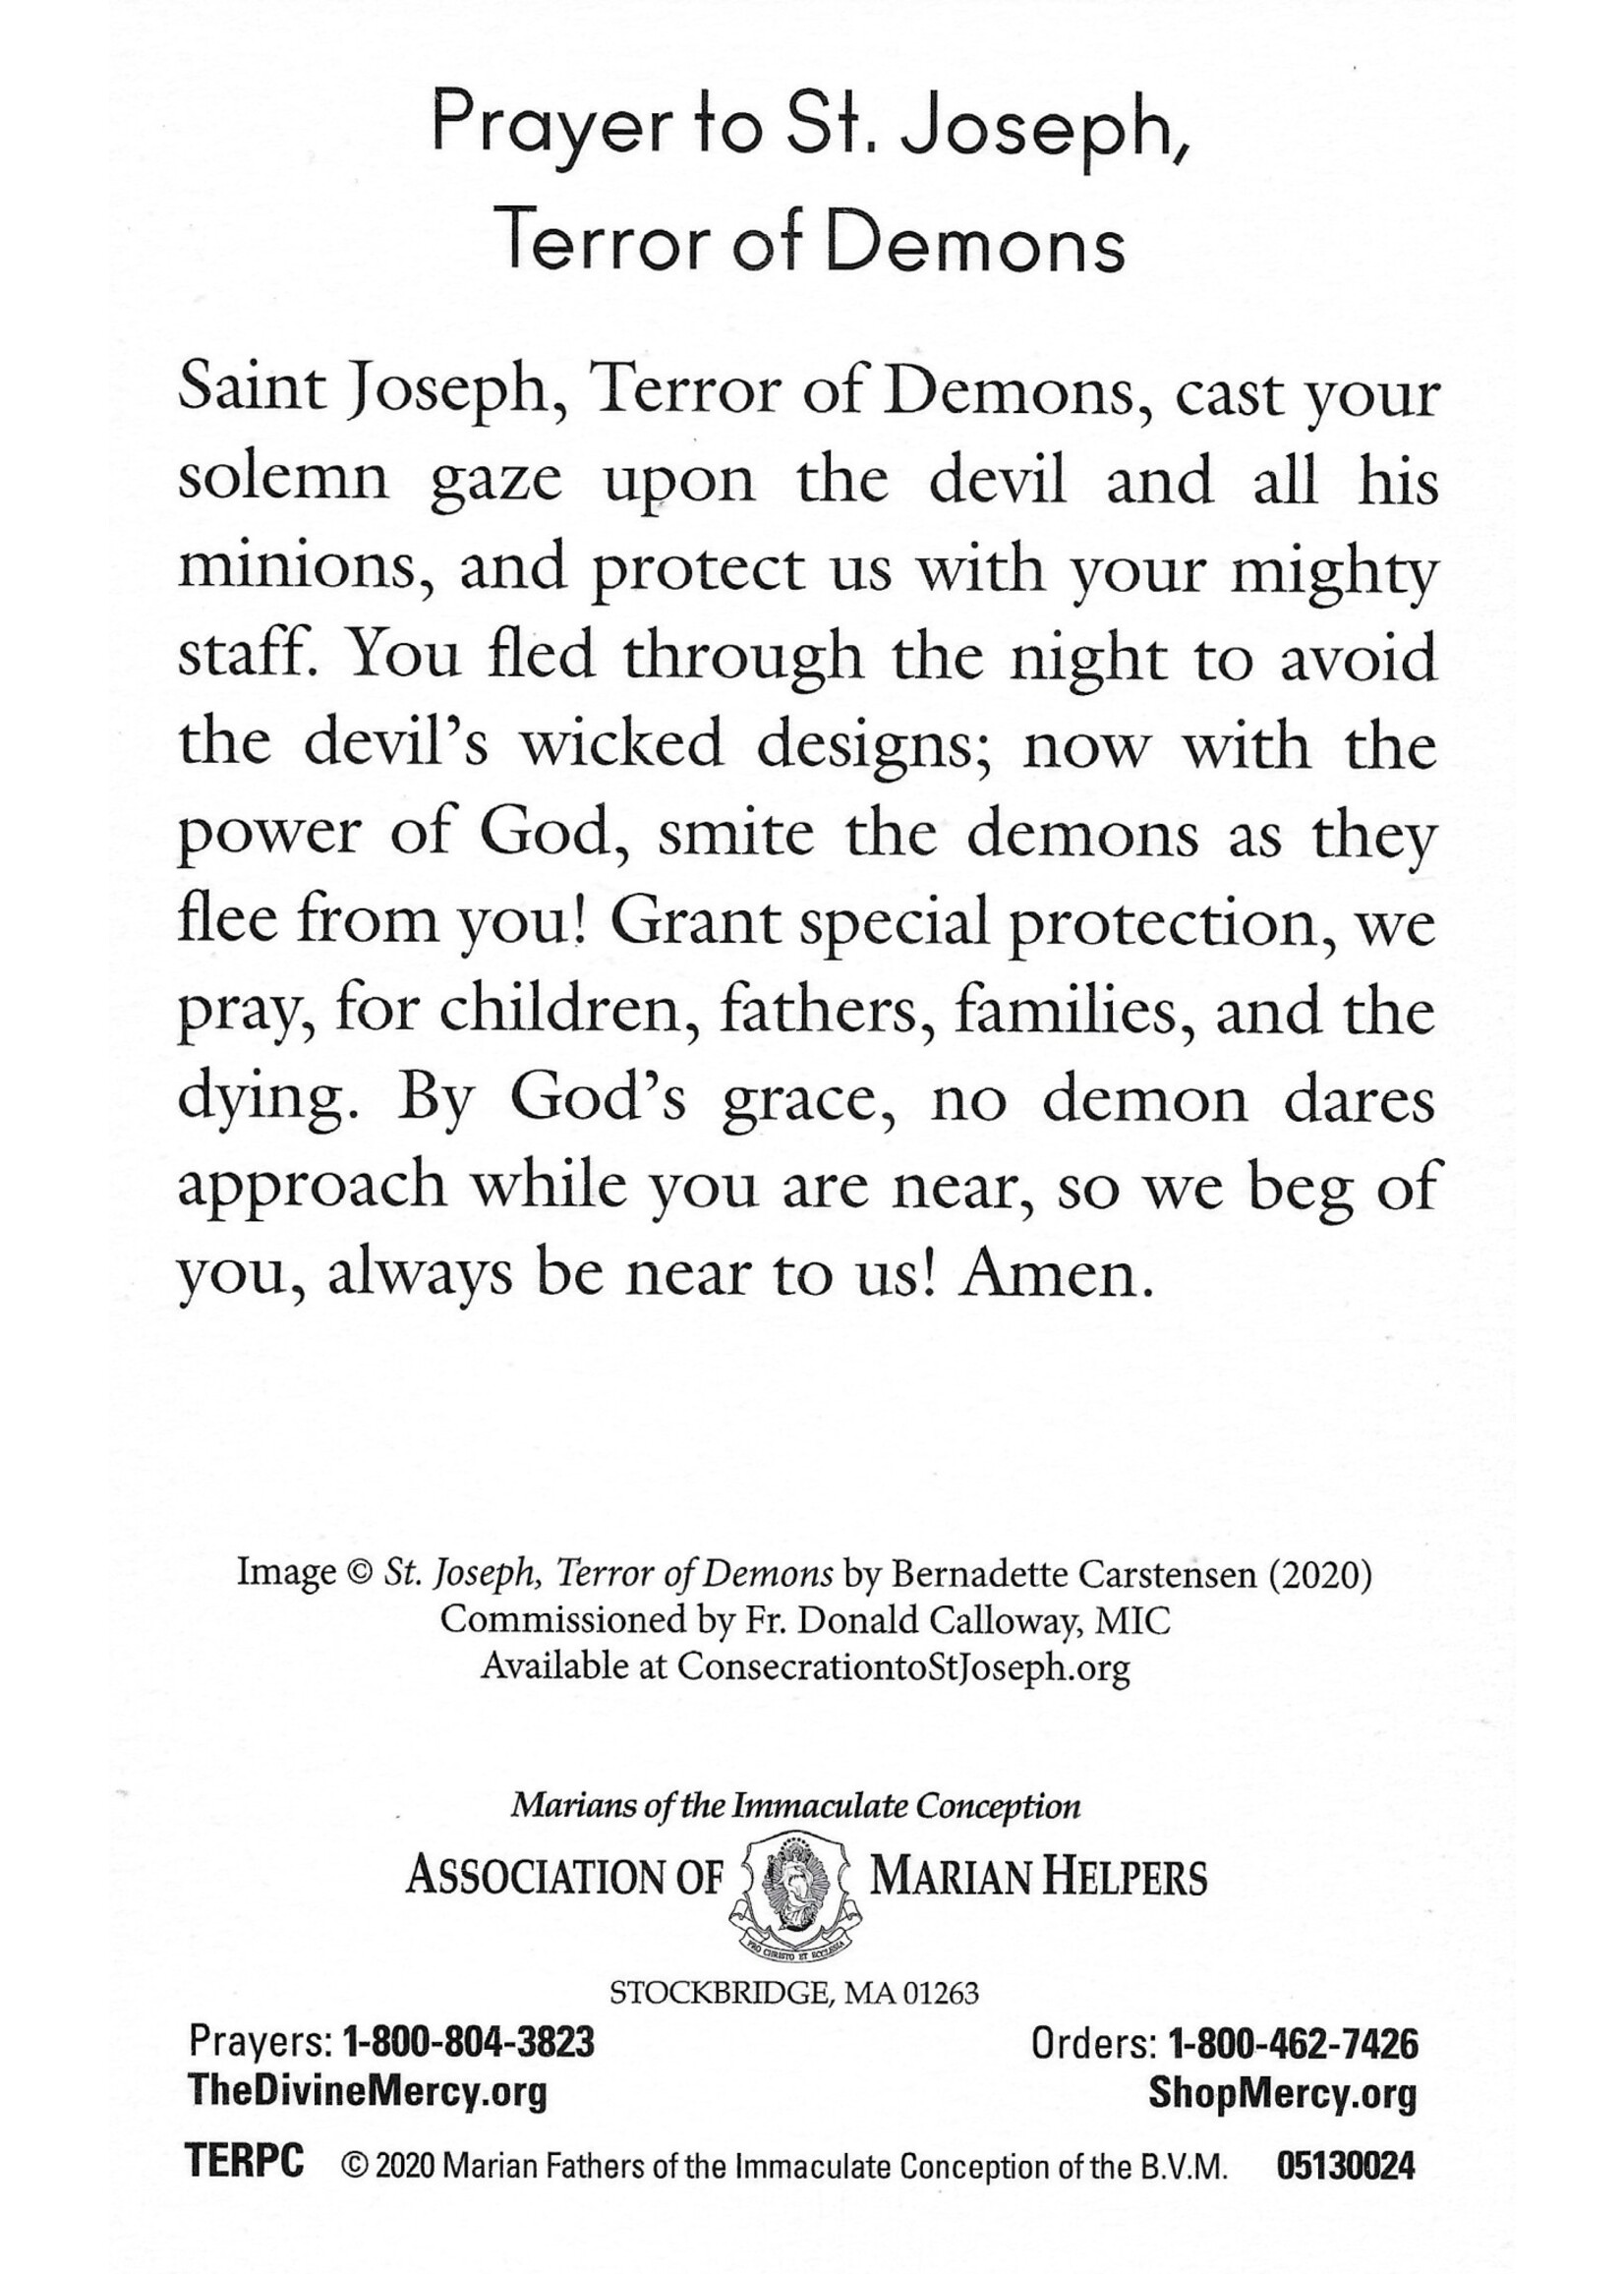 St Joseph Terror of Demons Prayer Card